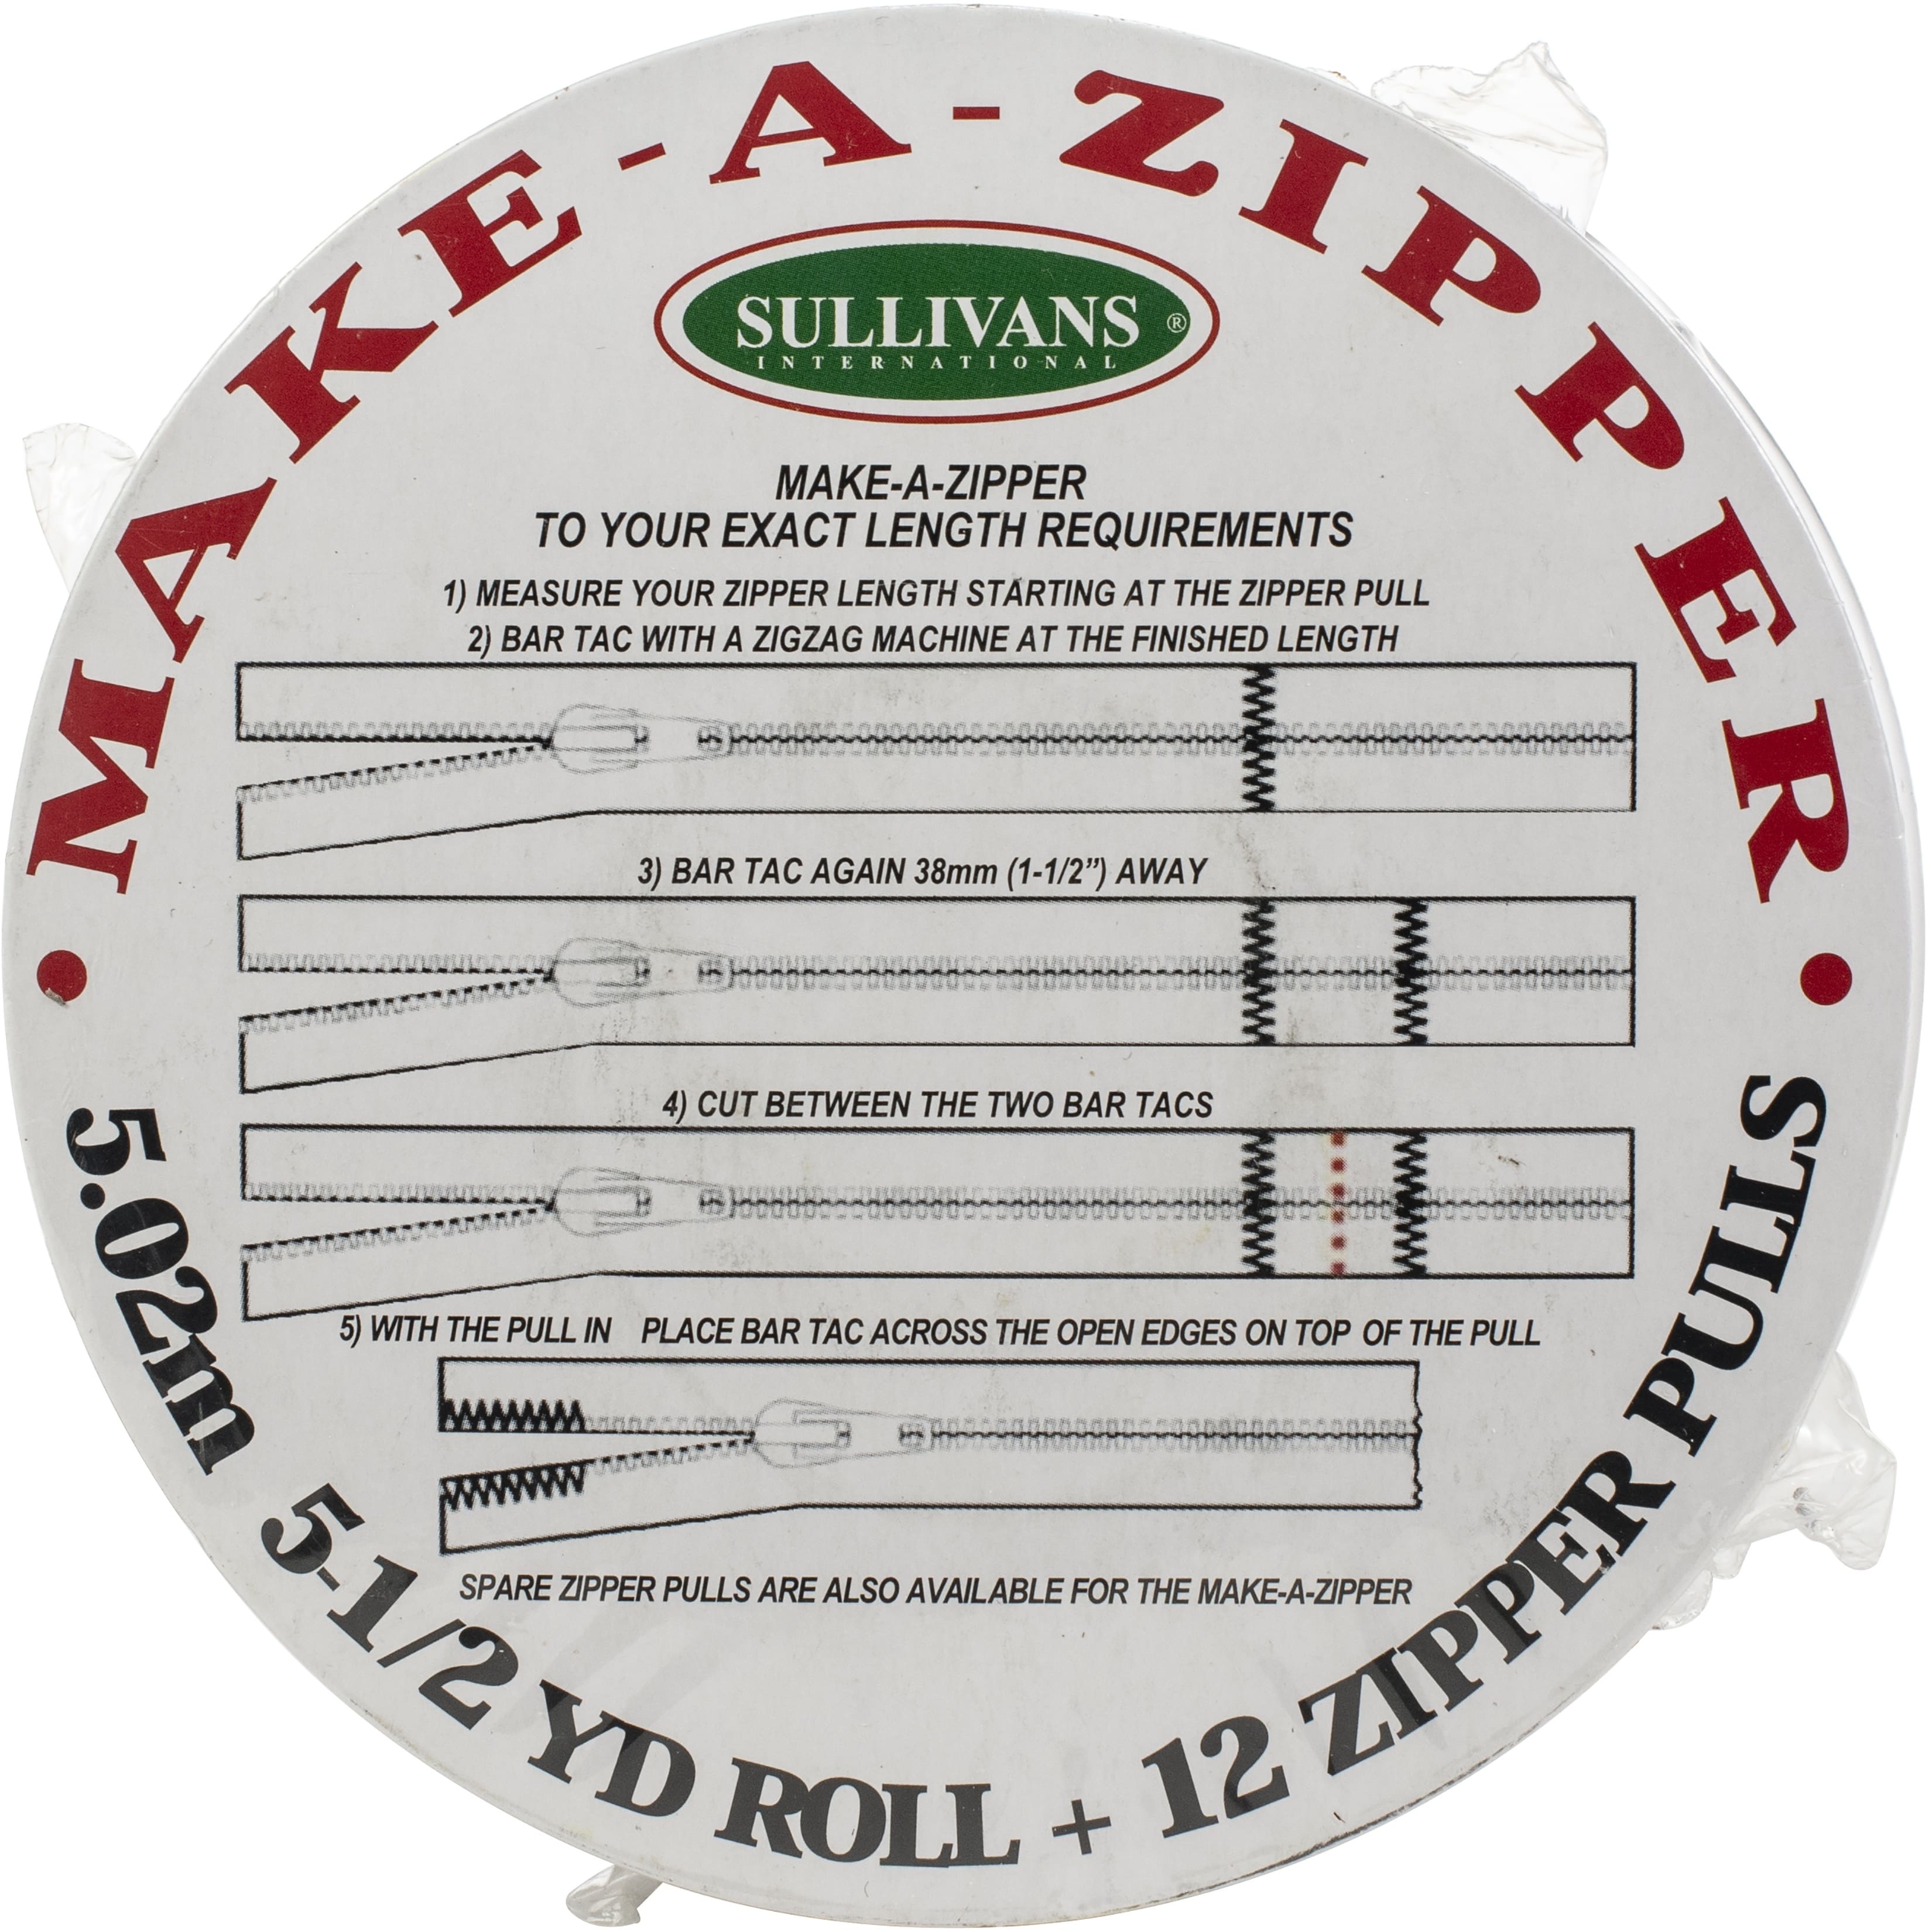 Spare Make-A-Zipper Pulls